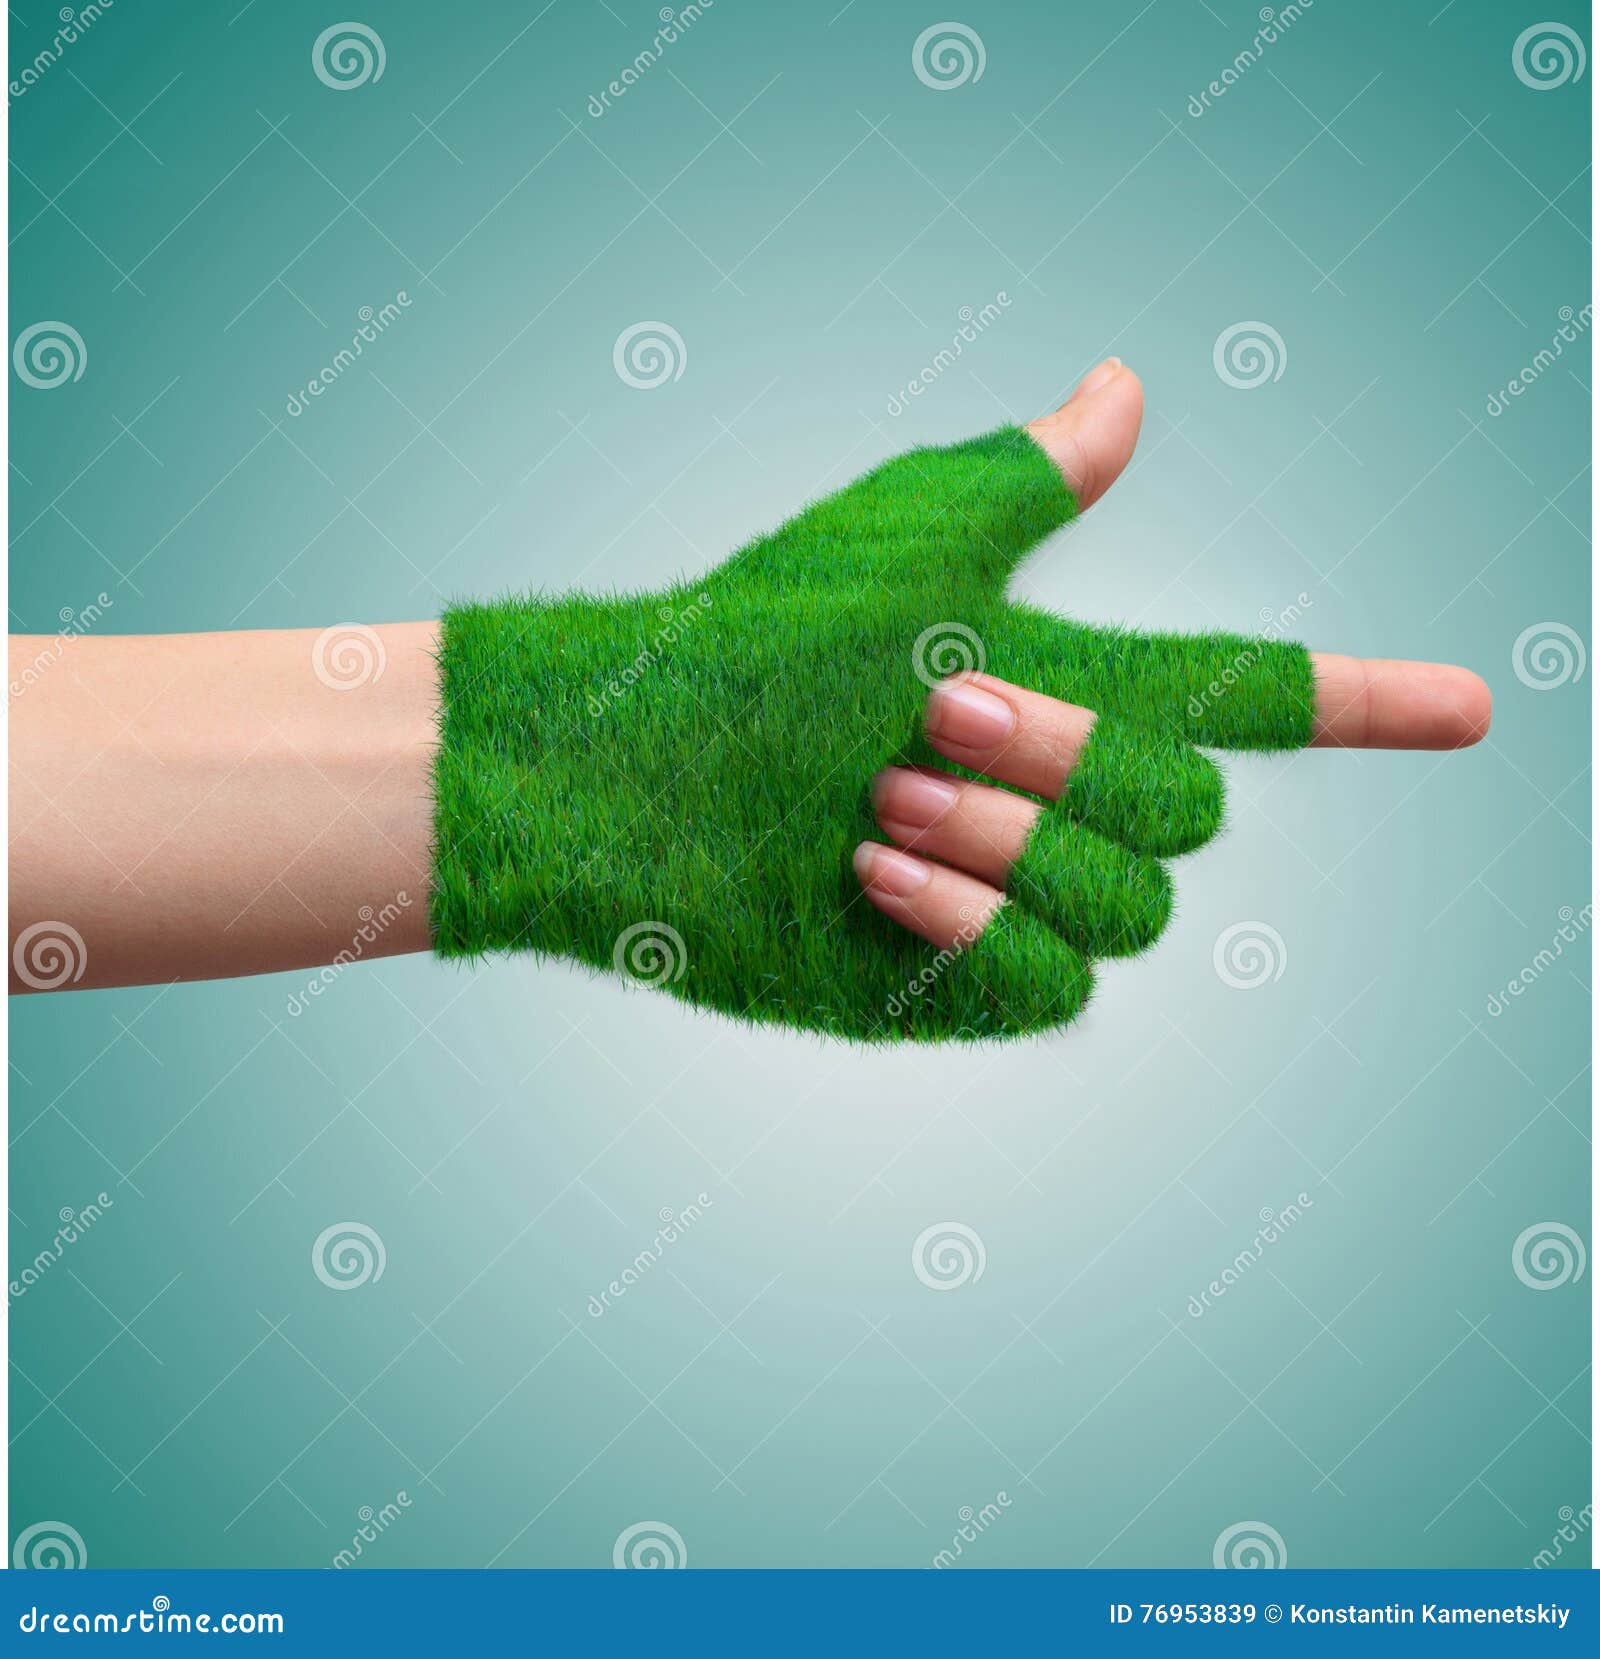 Правая рука зеленая. Зеленая рука. Рука зеленого цвета. Рука в зеленой перчатке указывает. Ольстер зеленая рука.